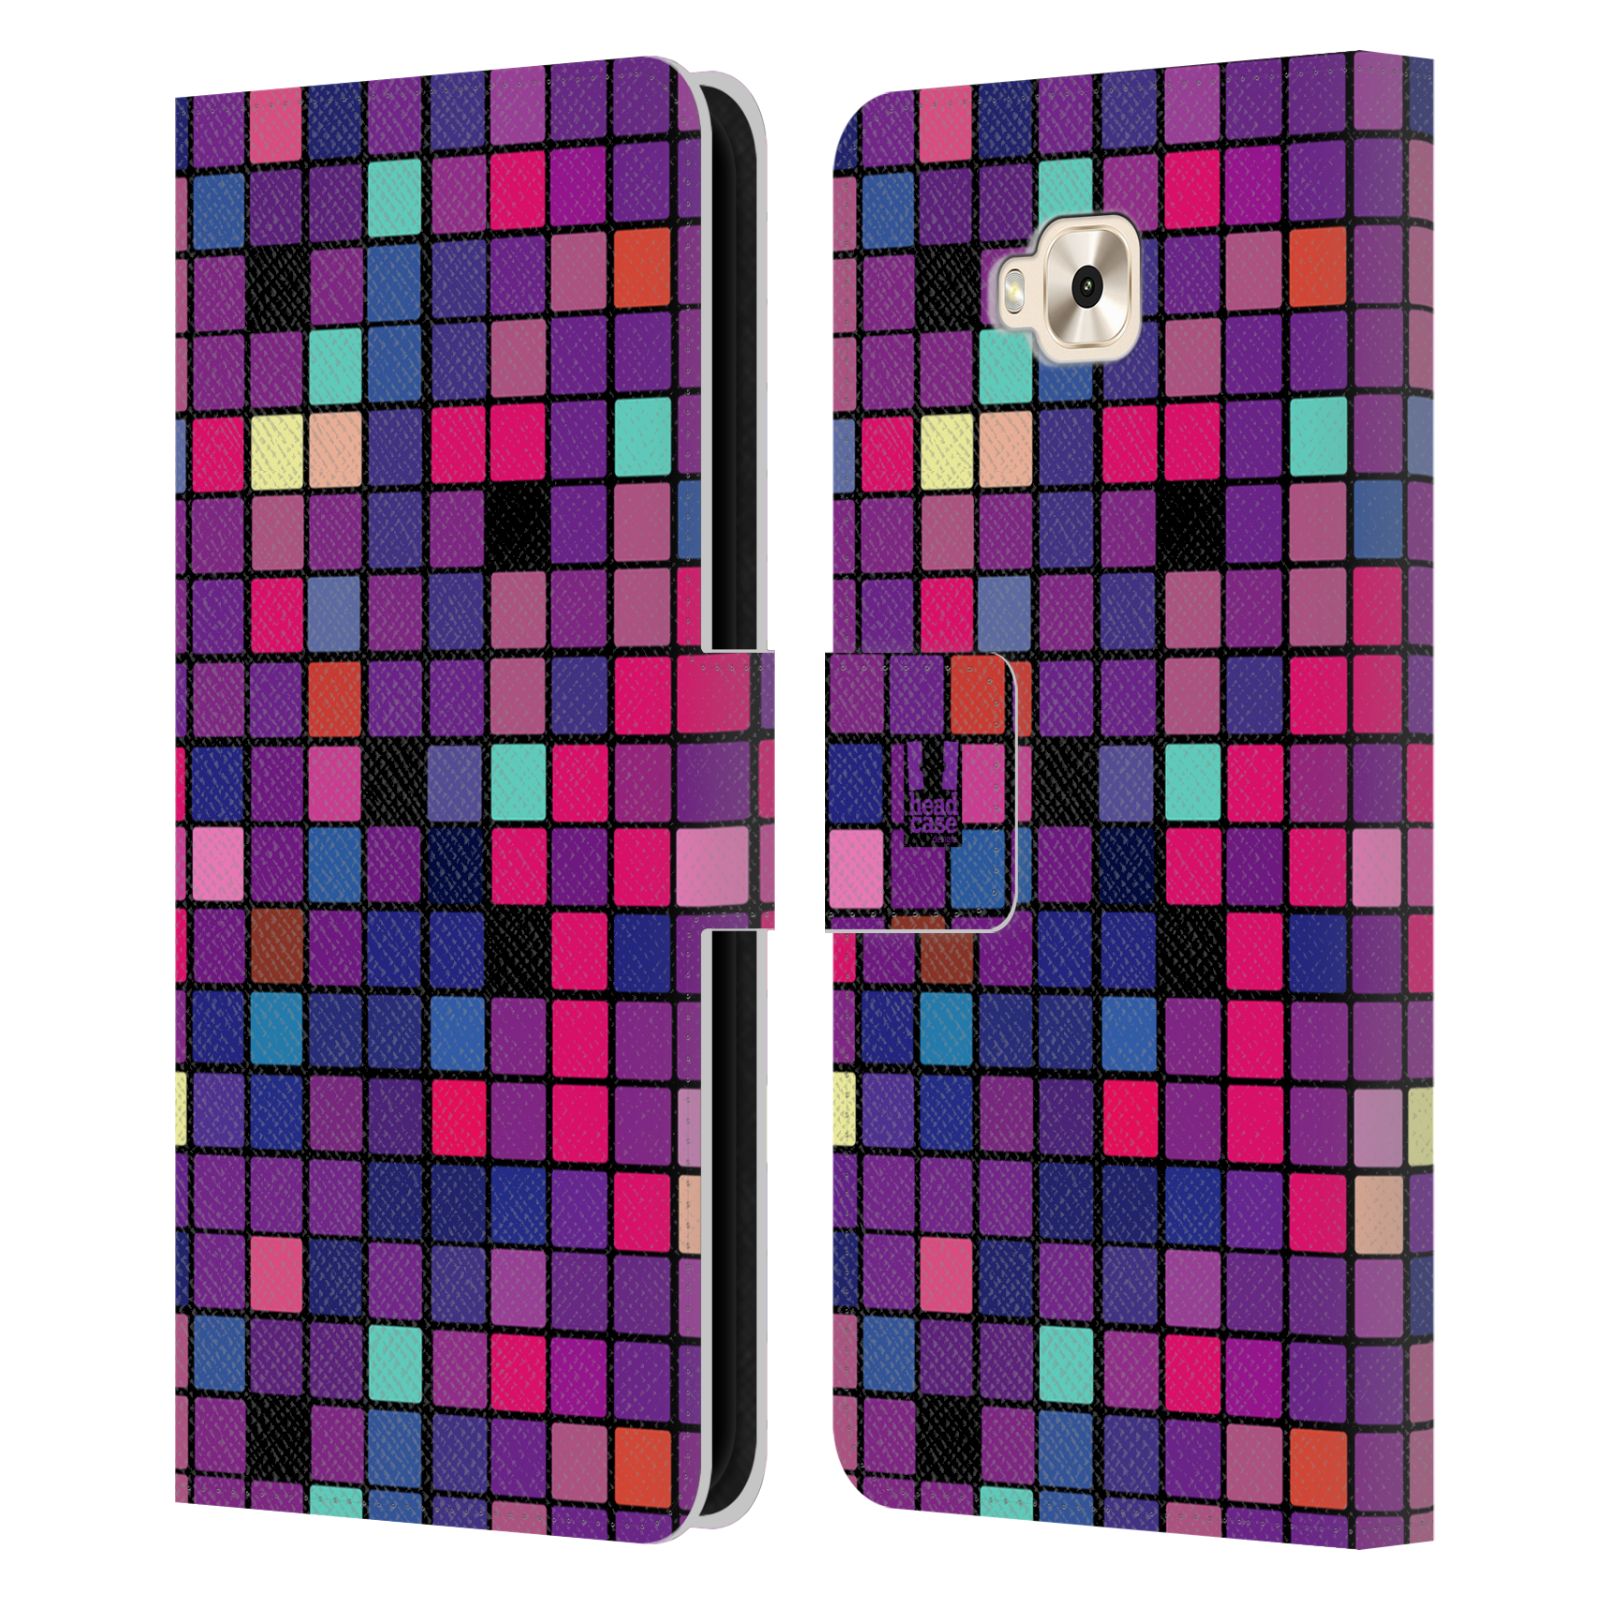 Pouzdro pro mobil Asus Zenfone 4 Selfie ZD553KL  - Disko style fialová